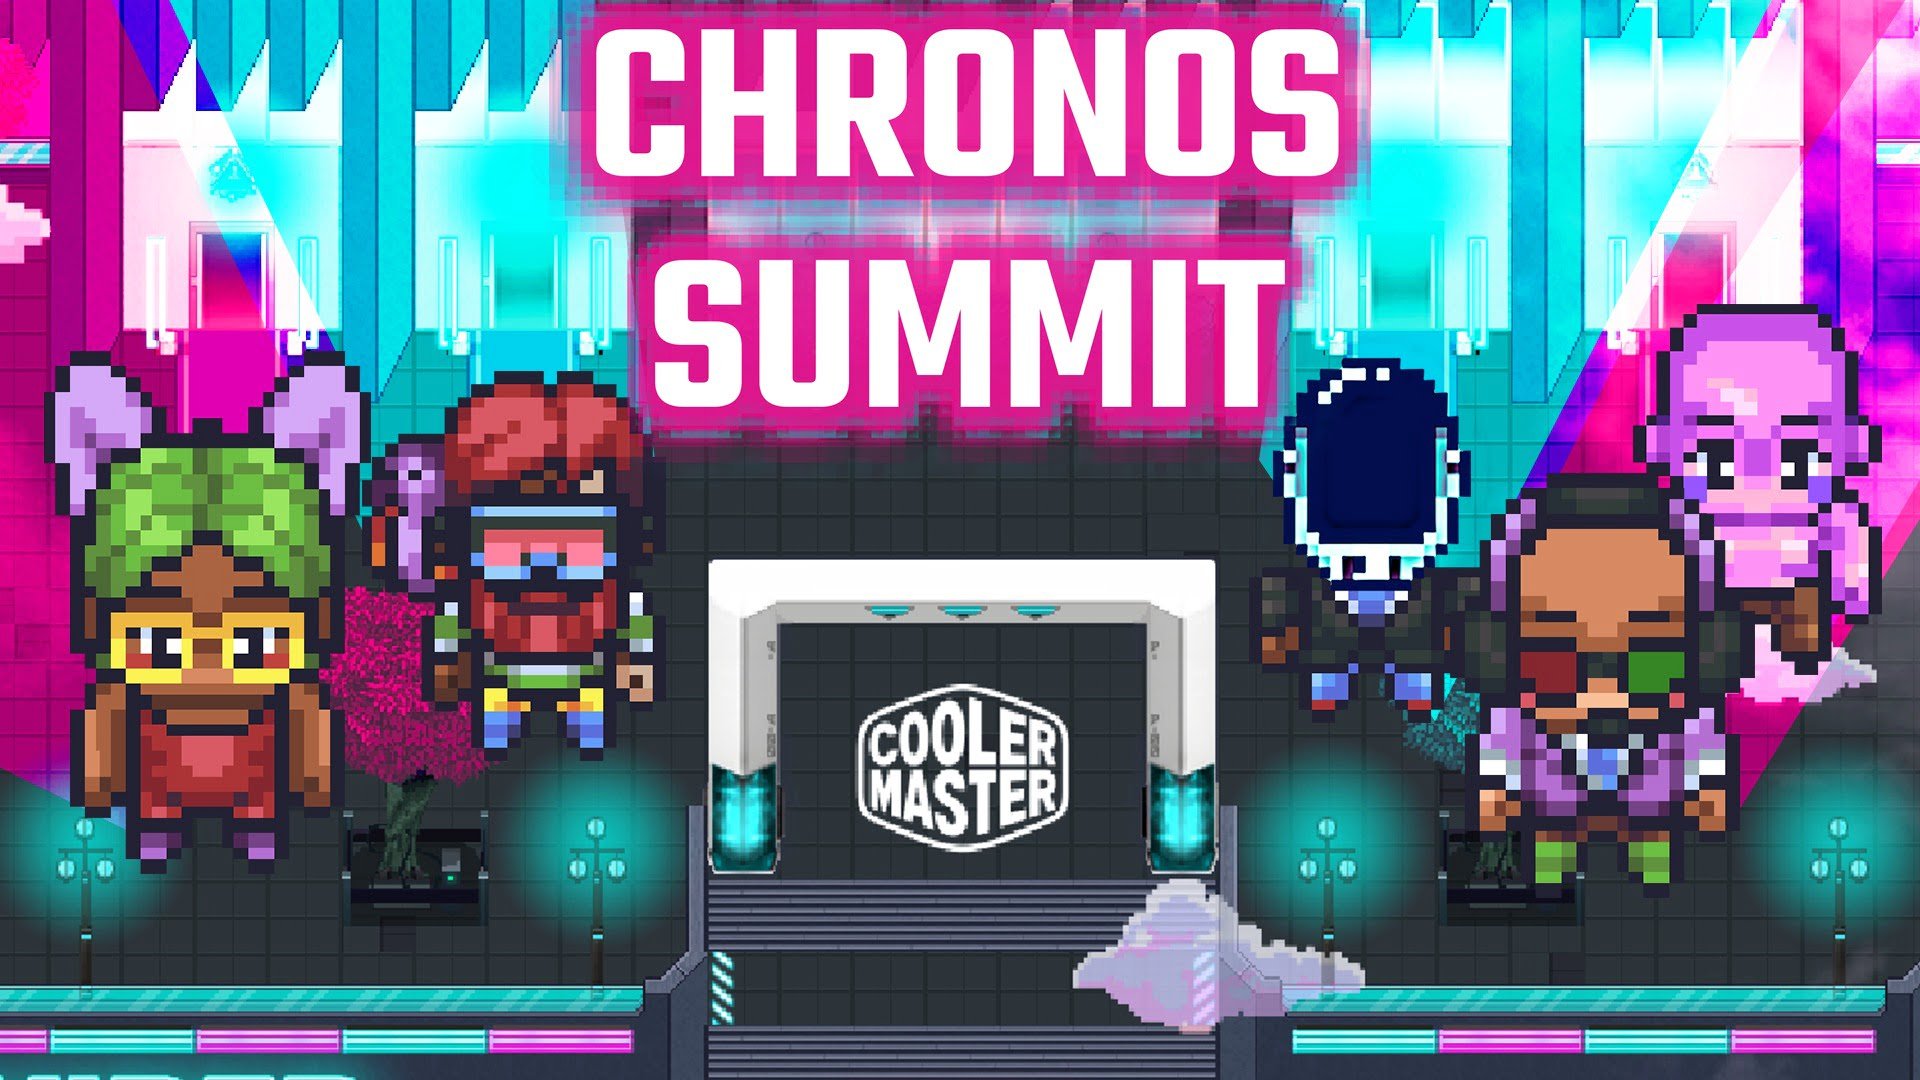 [PR] Mời tham gia sự kiện Cooler Master Chronos Summit 2022 - Image 1